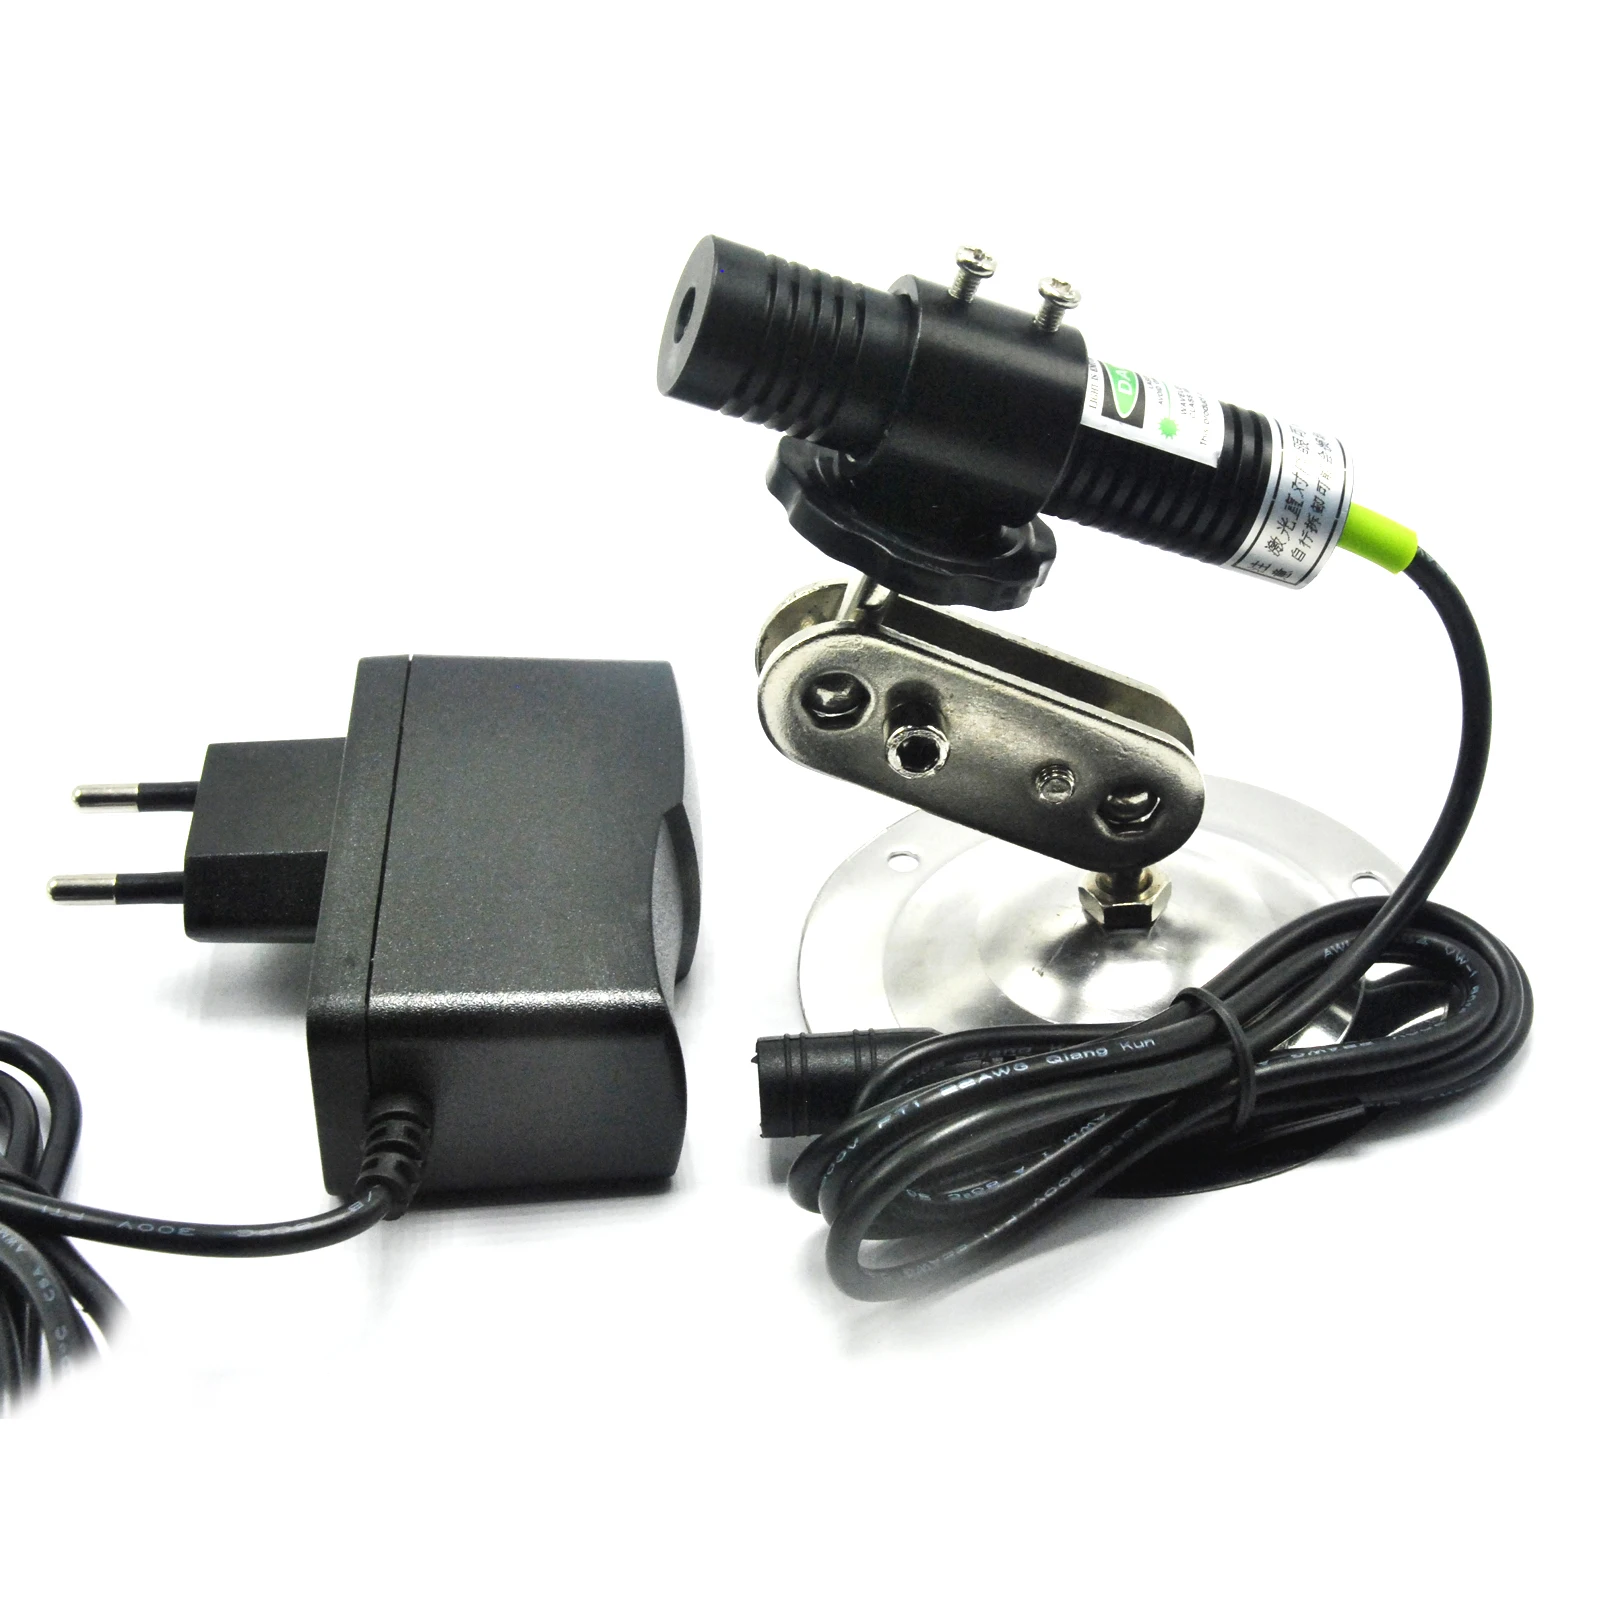 532nm 10mWGreen лазерный диод точечный модуль выравнивания локатор режущая машина световые эффекты + адаптер + держатель от AliExpress RU&CIS NEW